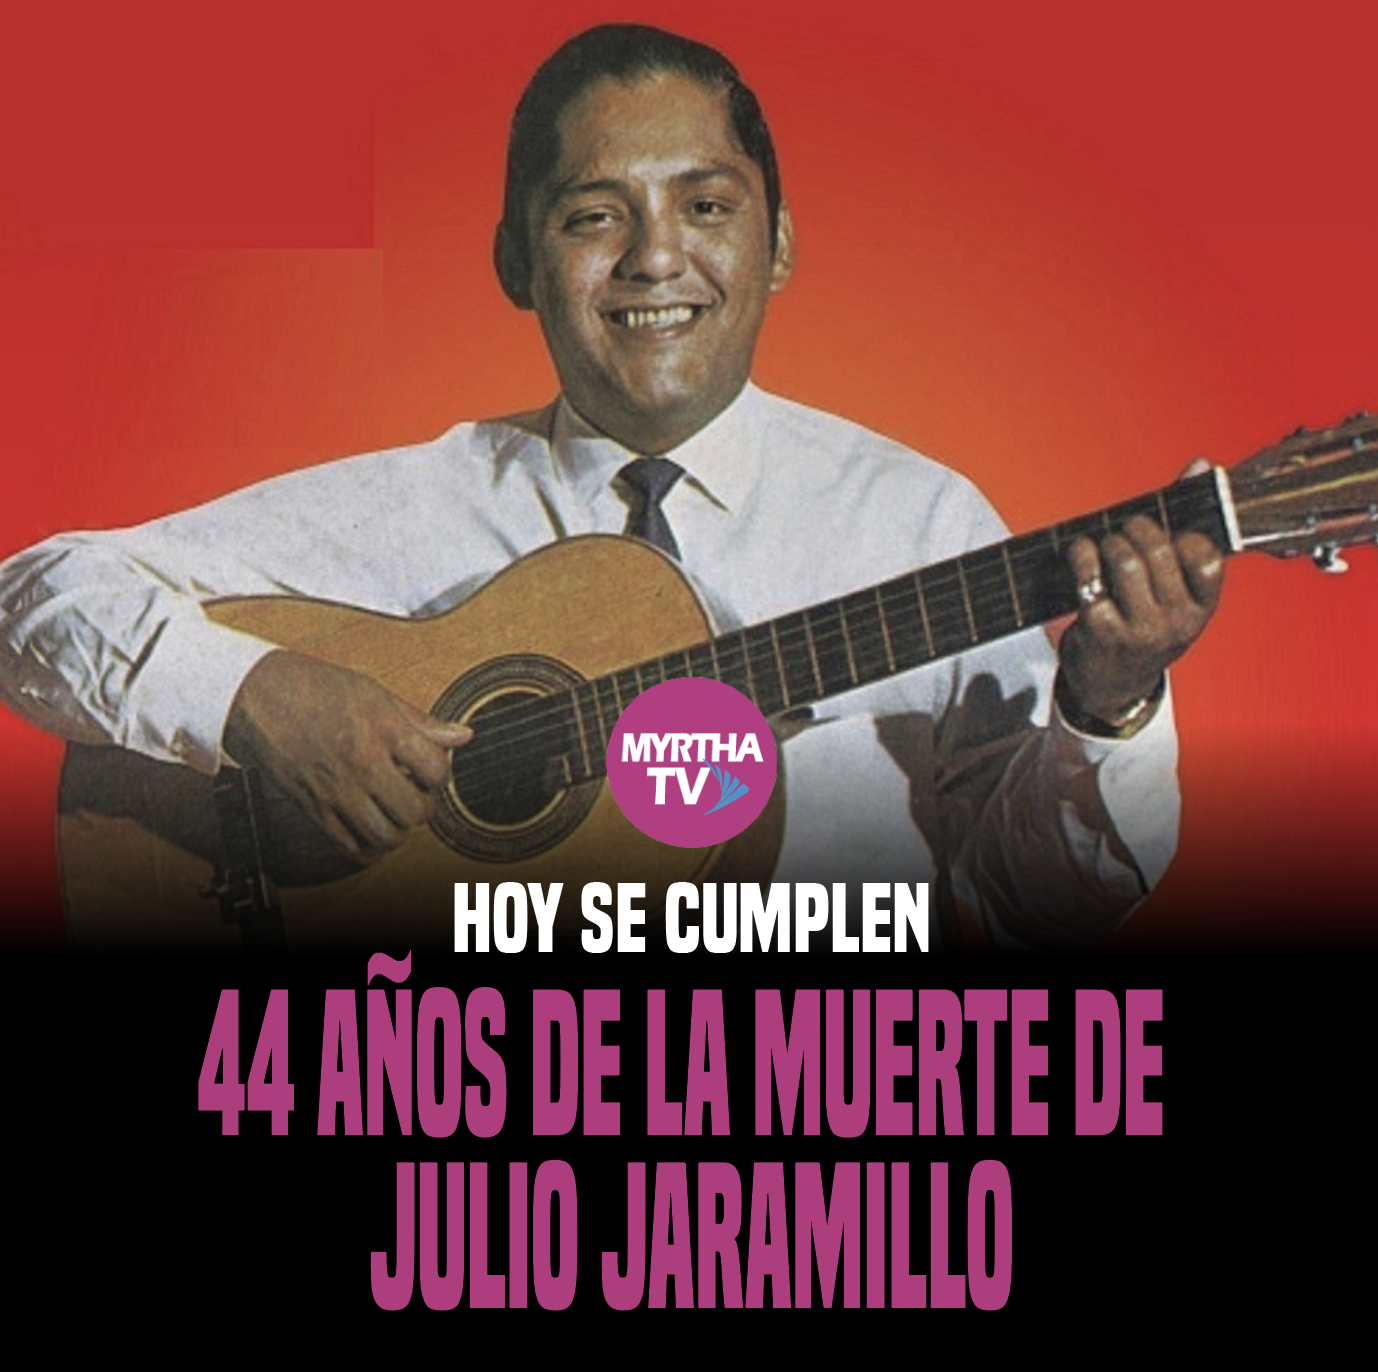 HOY SE CUMPLEN 44 AÑOS DE LA MUERTE DE JULIO JARAMILLO